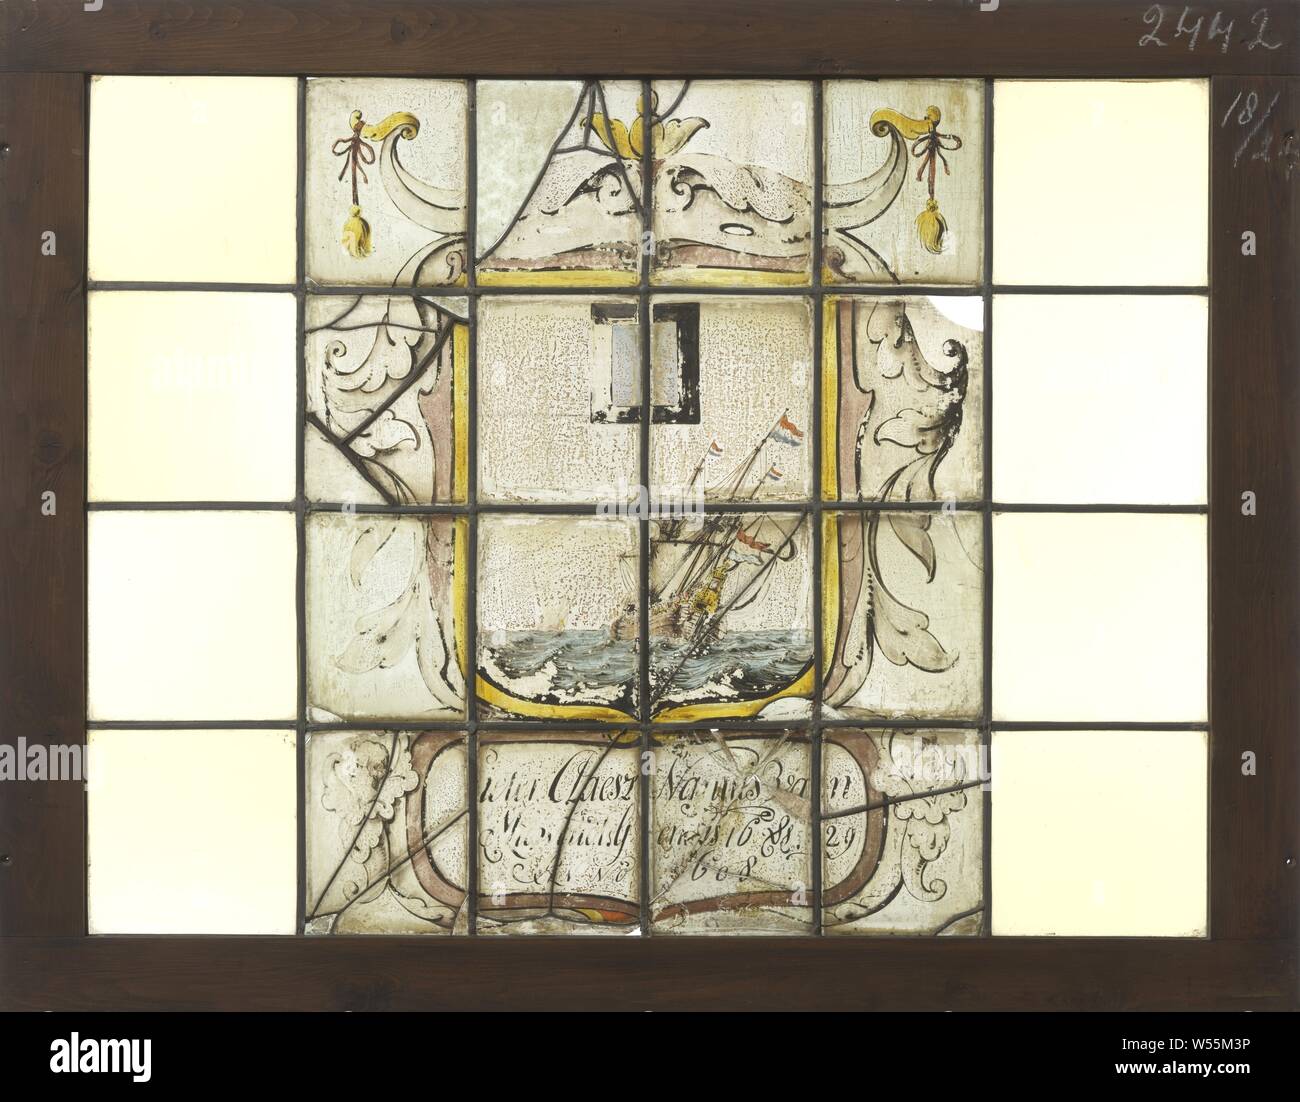 Quadrato con una rappresentazione della marina in uno stemma con didascalia "Pieter Claesz van Nannes Midwout. Genesi 16 & 29 Anno 1698 ', quadrato con una rappresentazione della marina in uno stemma con didascalia' Pieter Claesz van Nannes Midwout. Genesi 16 & 29 Anno 1698 '., anonimo, 1698, vetro, h 74,5 cm × W 96,2 cm Foto Stock